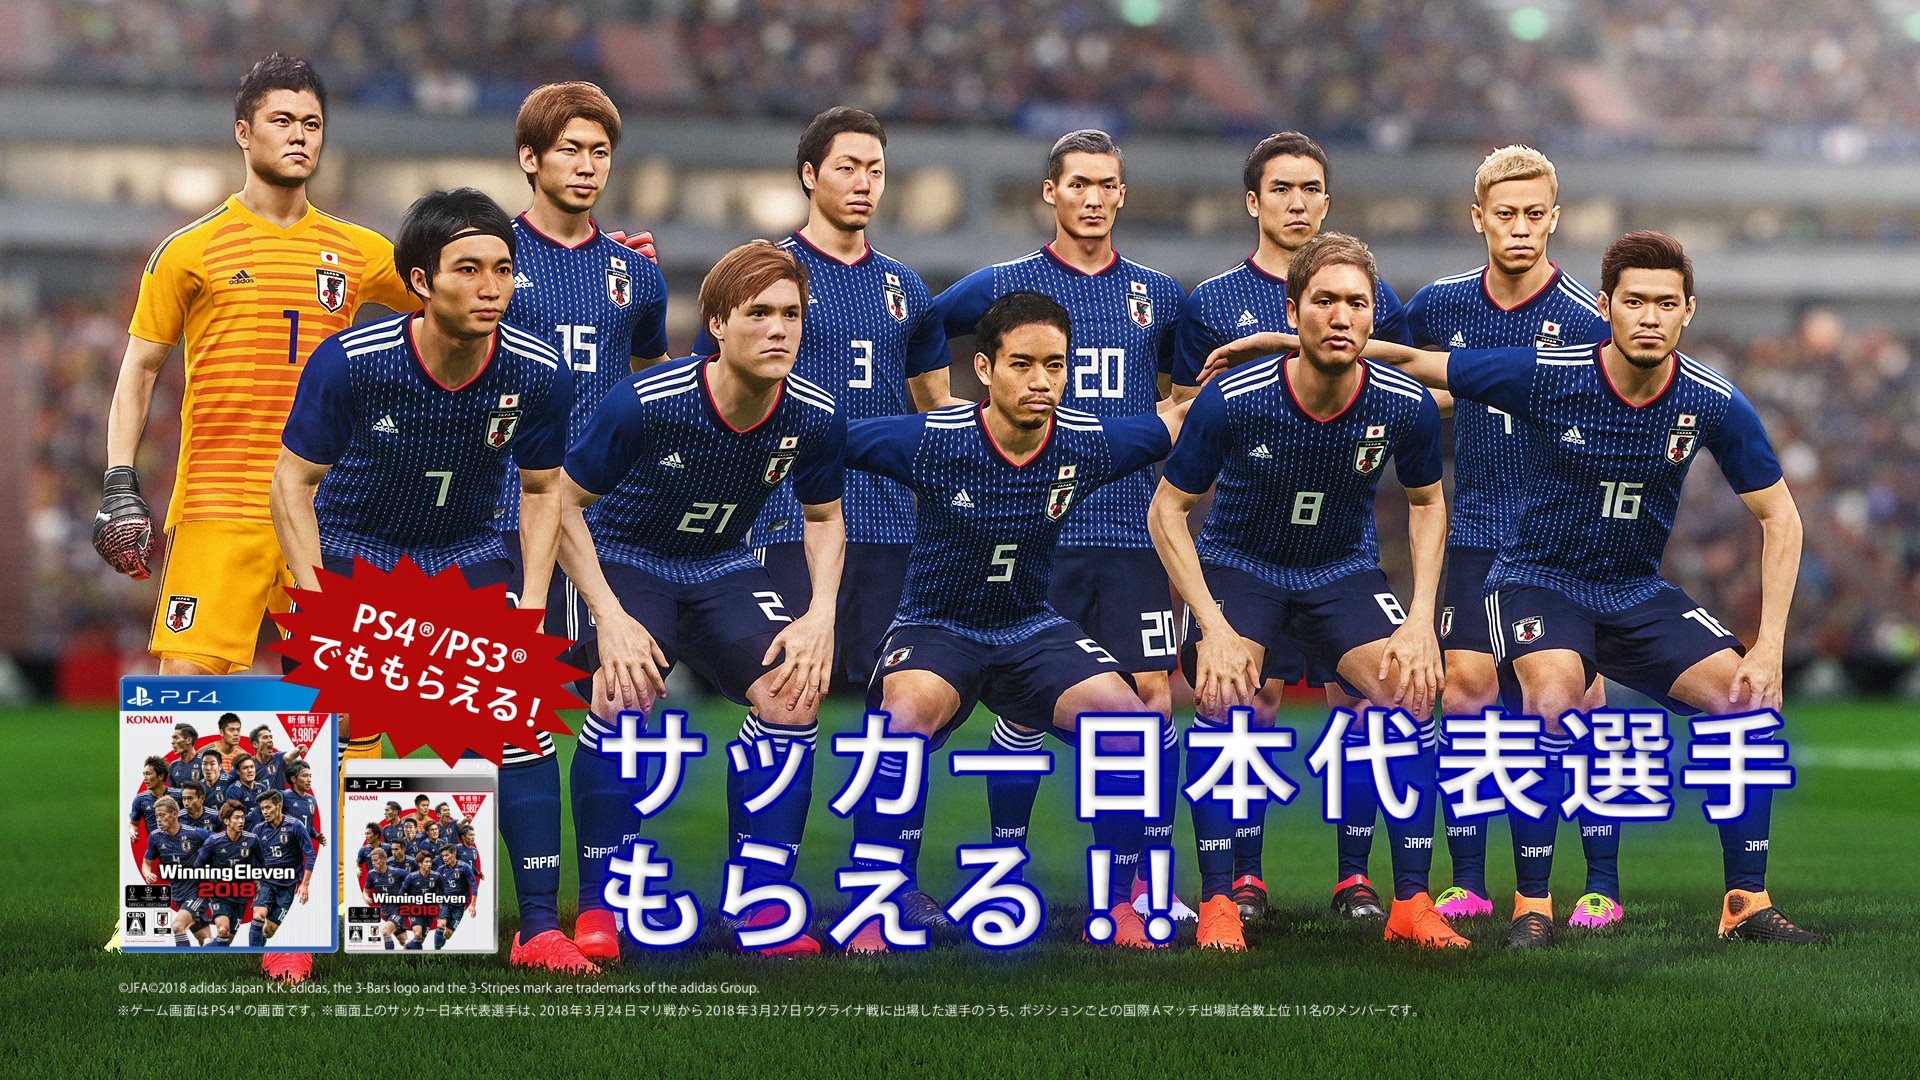 O Xrhsths Efootball 公式 Sto Twitter ウイイレスマホ のtvcm放送を記念して サッカー日本代表選手が獲得できるspエージェント 10 サッカー日本代表 をプレゼント中 1人1回 日本にお住まいの方のみ Ps4 3の ウイイレ 18でも